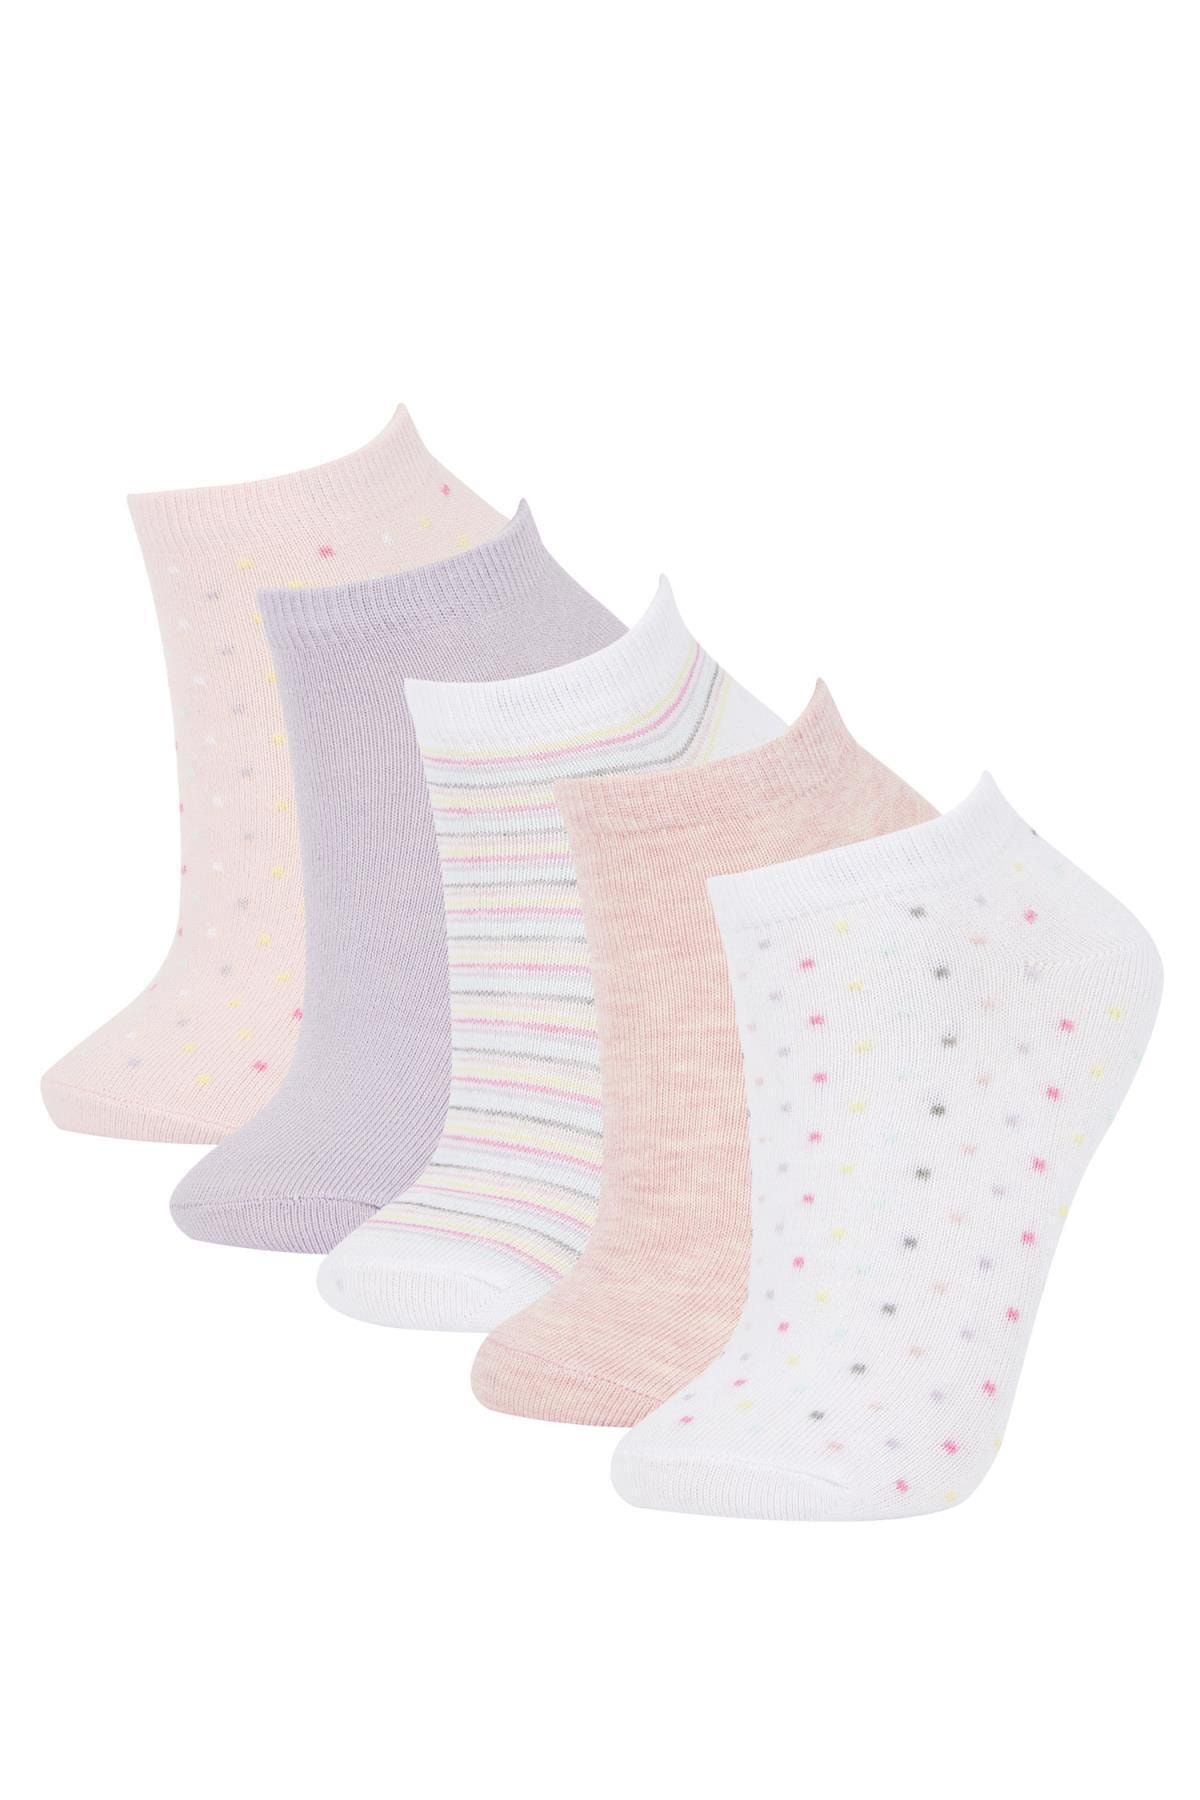 Defacto Kadın 5li Pamuklu Patik Çorap W8944azns